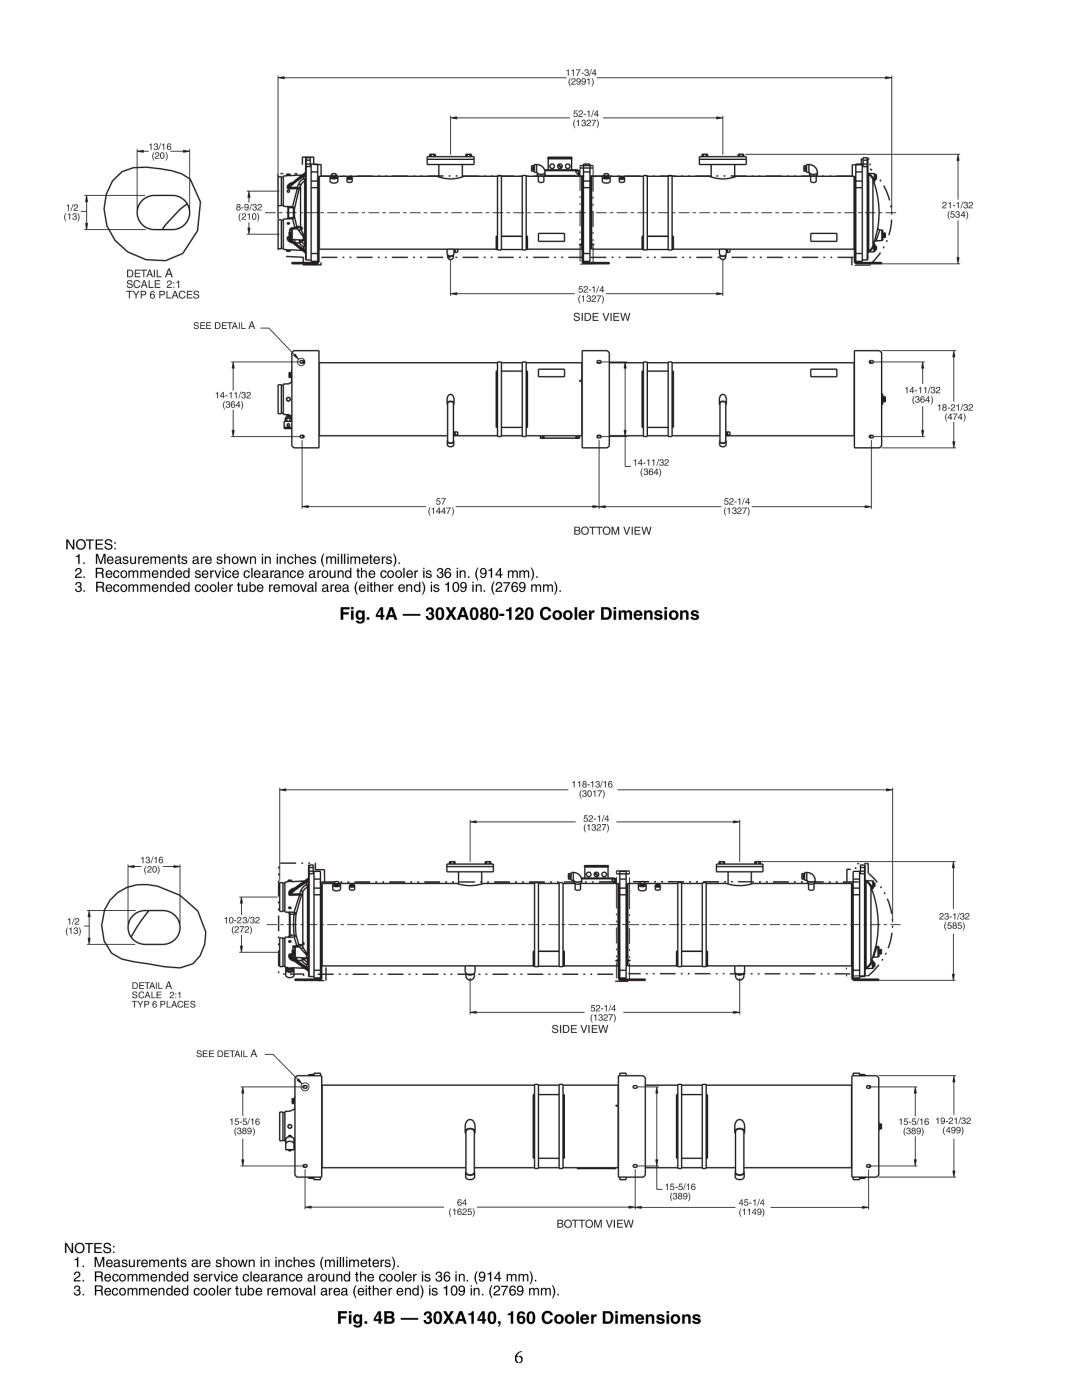 Carrier 00EFN900003000A installation instructions A - 30XA080-120 Cooler Dimensions, B - 30XA140, 160 Cooler Dimensions 